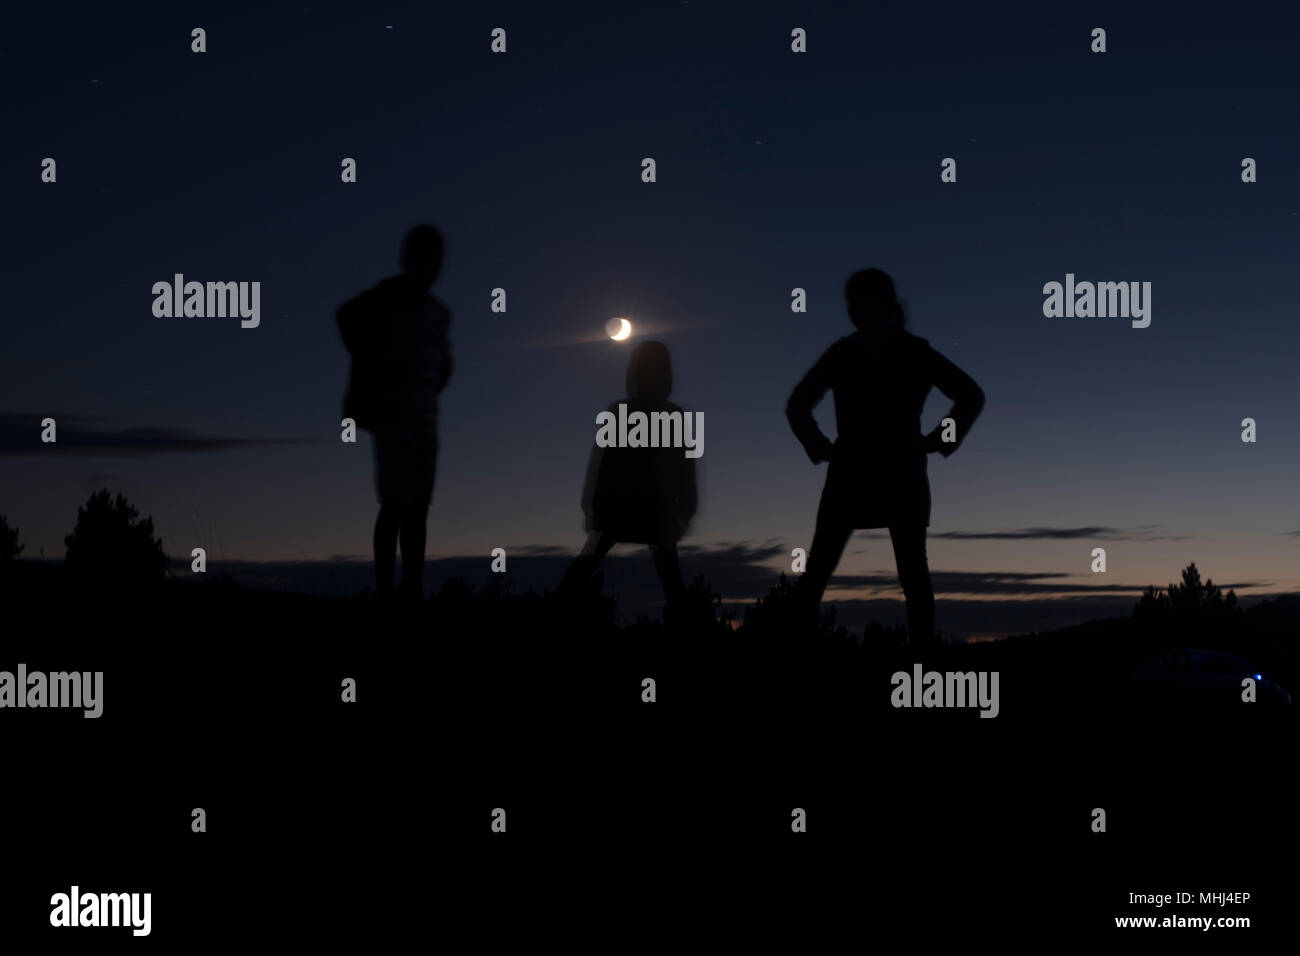 Konturen von drei Menschen bei Nacht Stockfoto